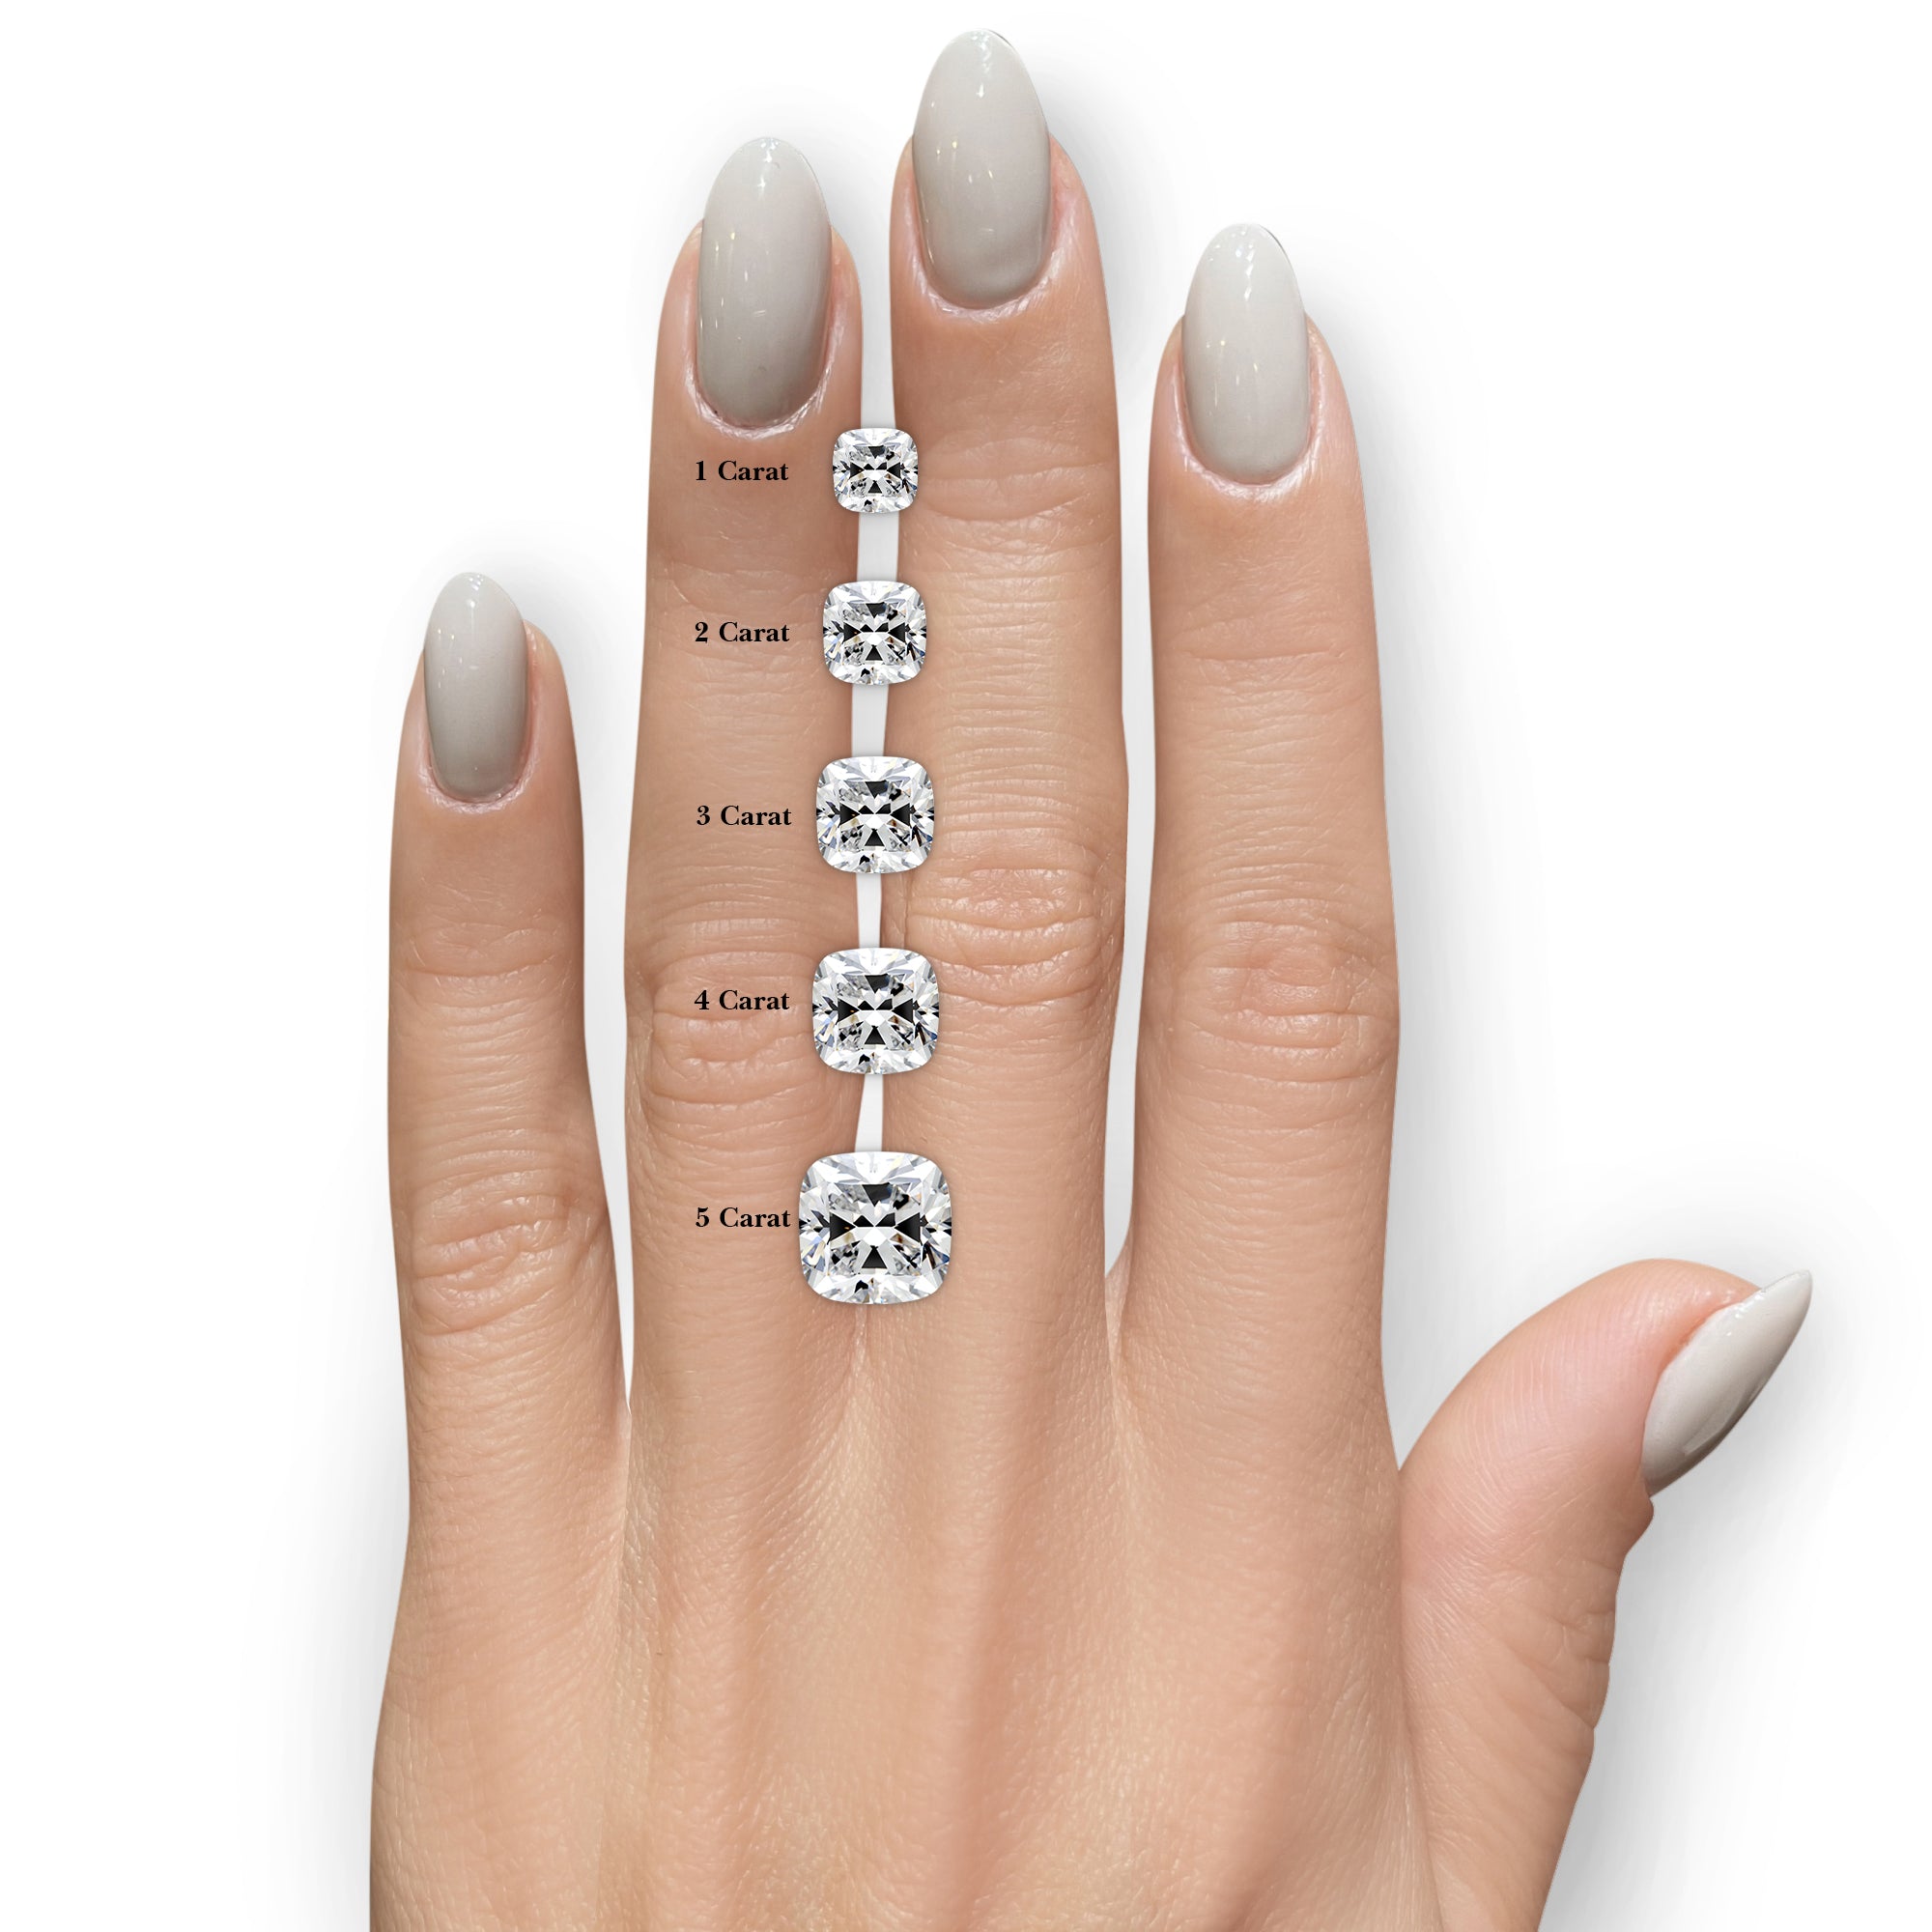 Lyric Diamond Engagement Ring -14K Rose Gold